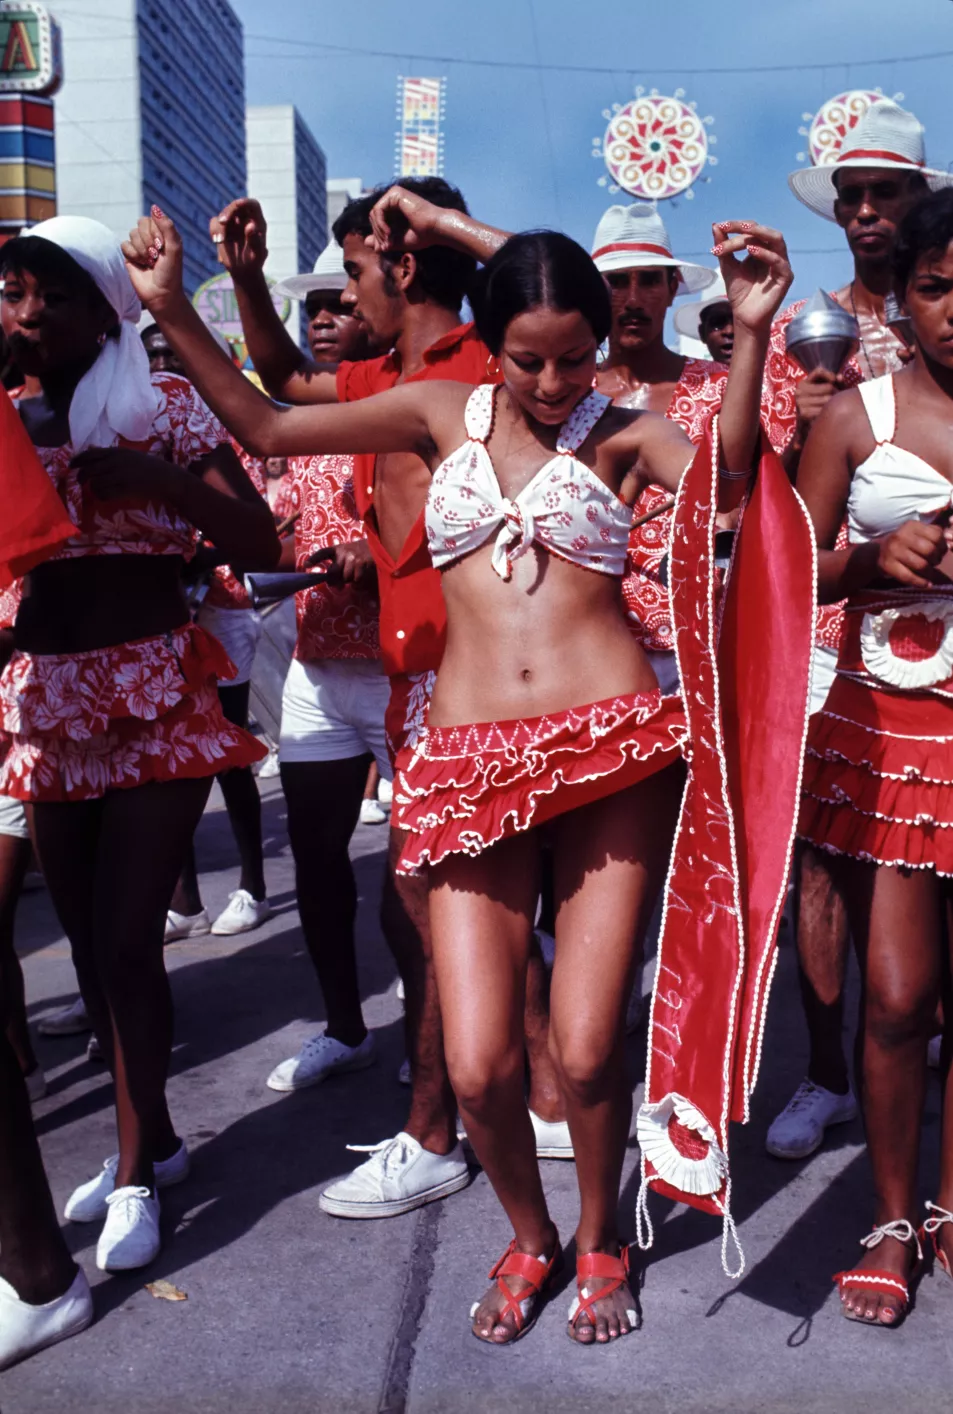 Carnival in 1969 